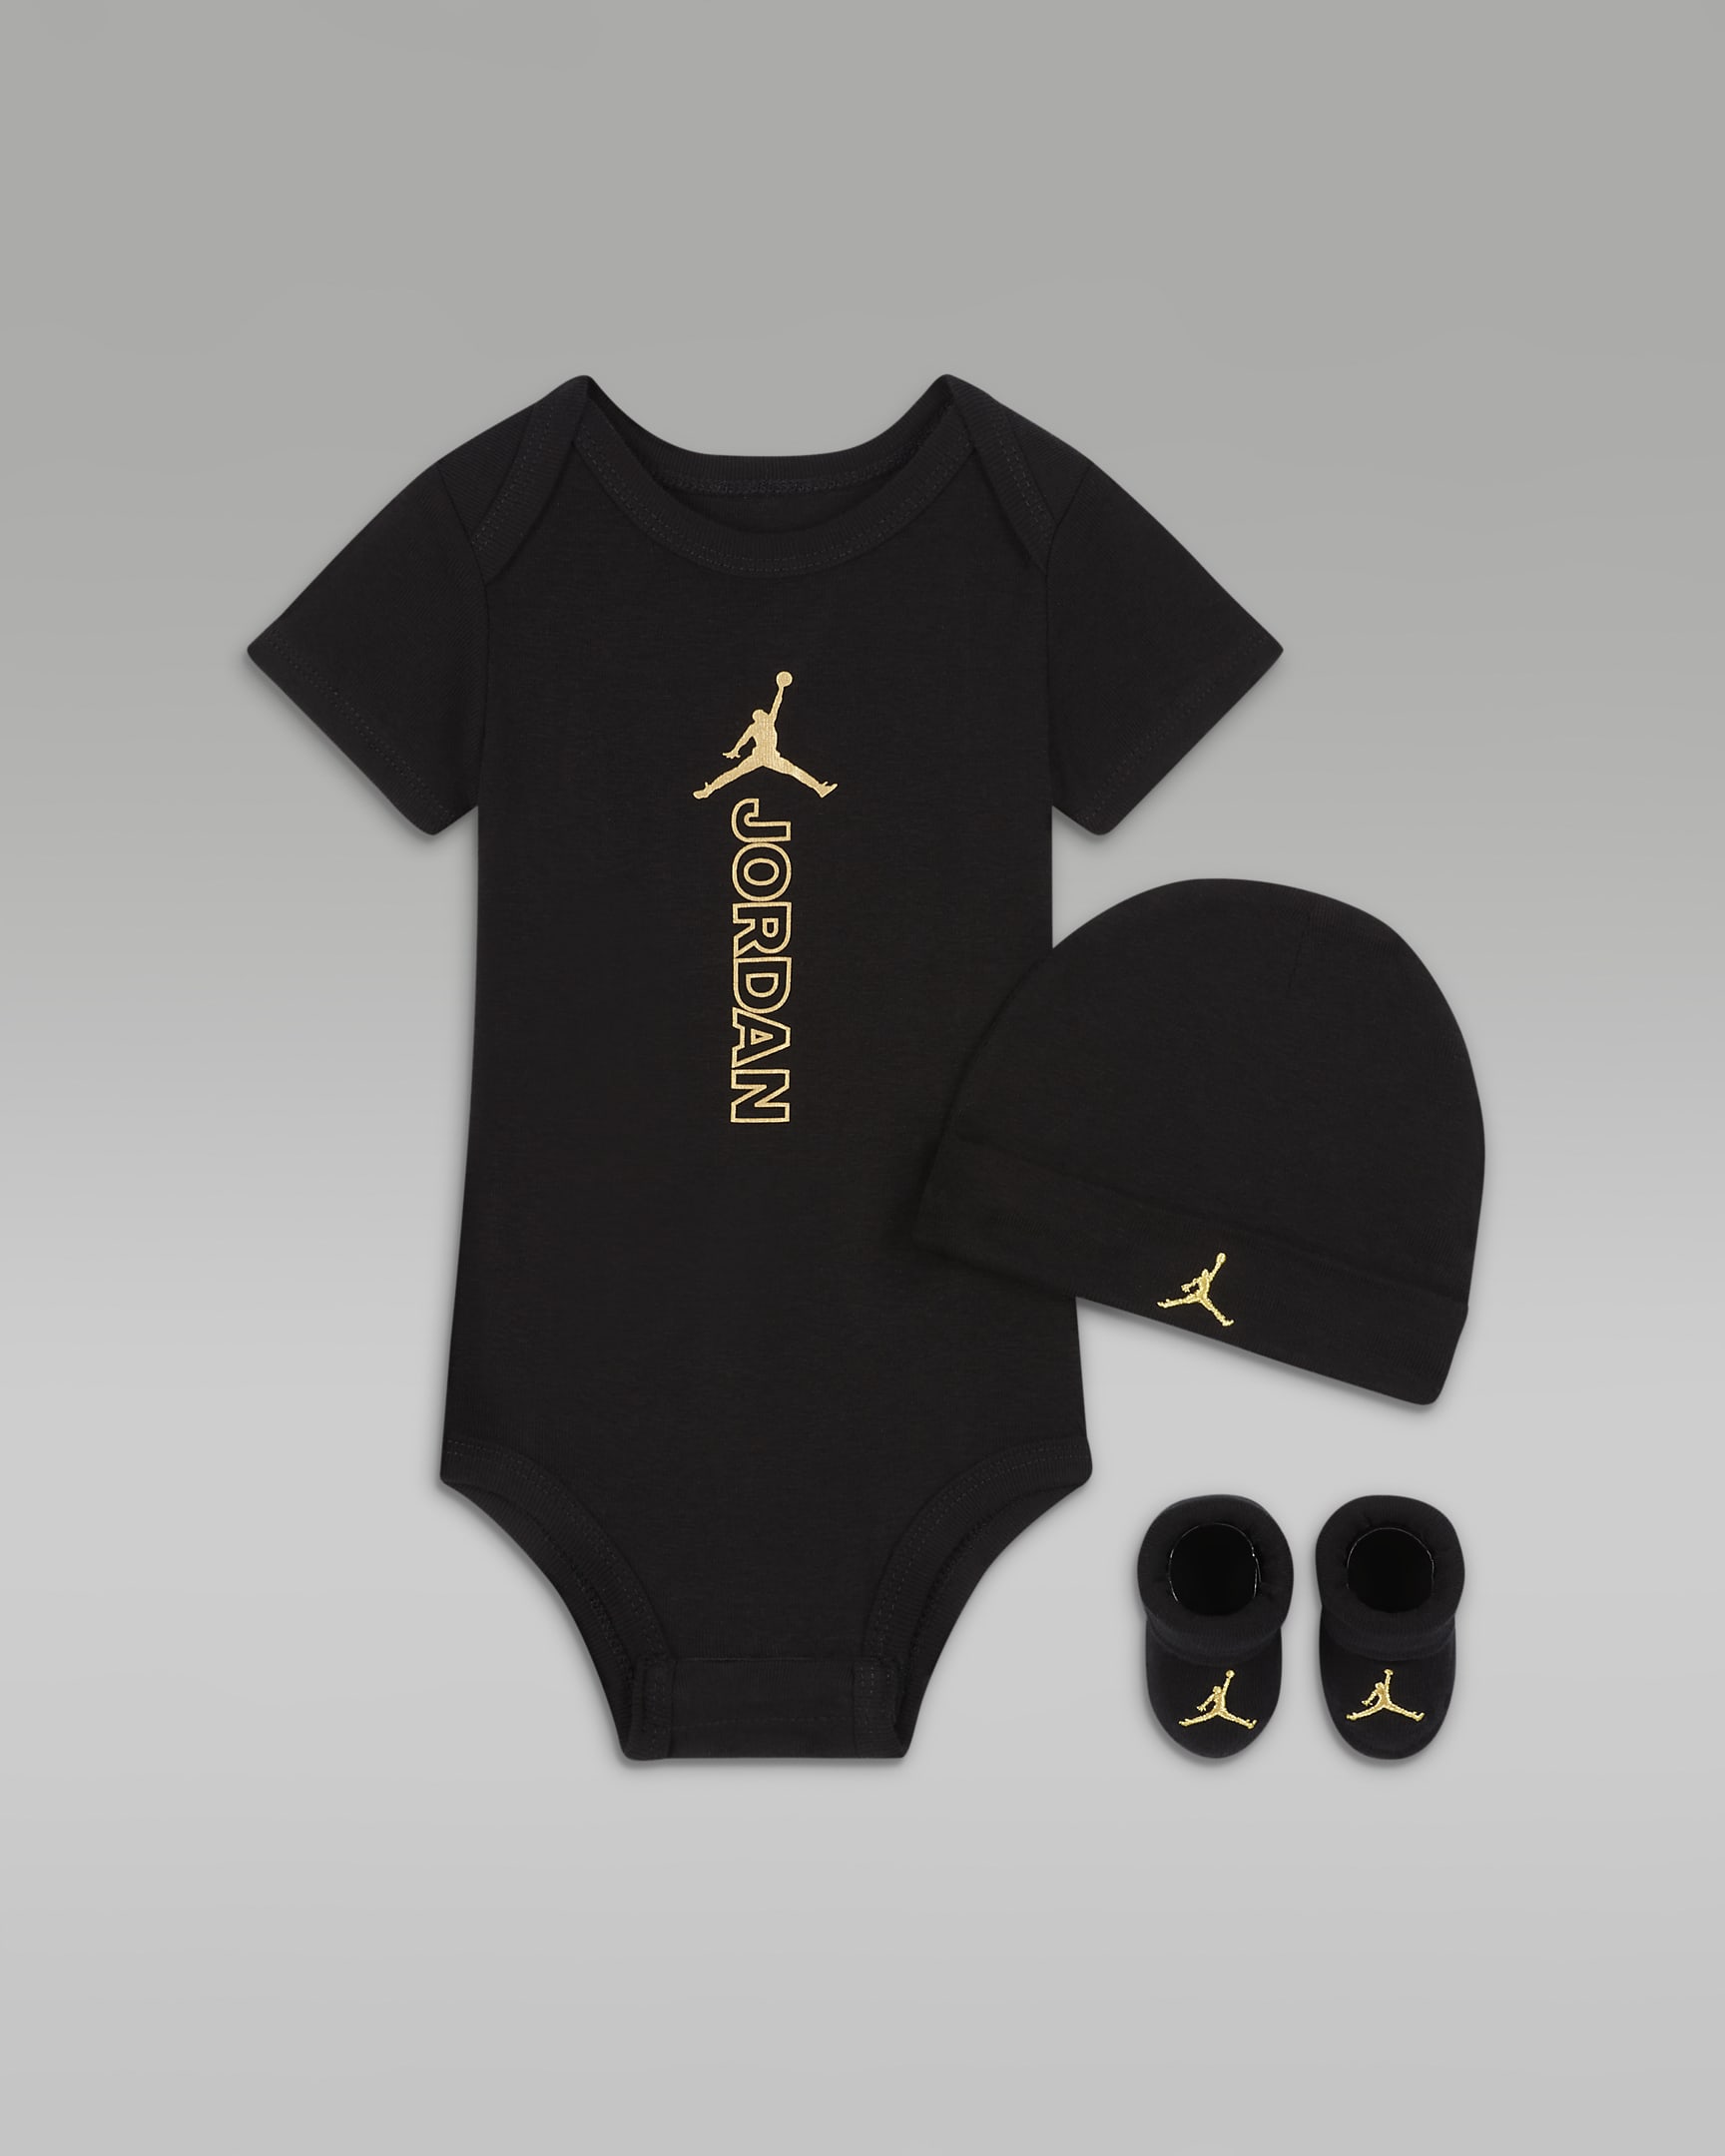 Jordan Black & Gold Bodysuit, Hat and Booties Box Set Baby Set. Nike HU